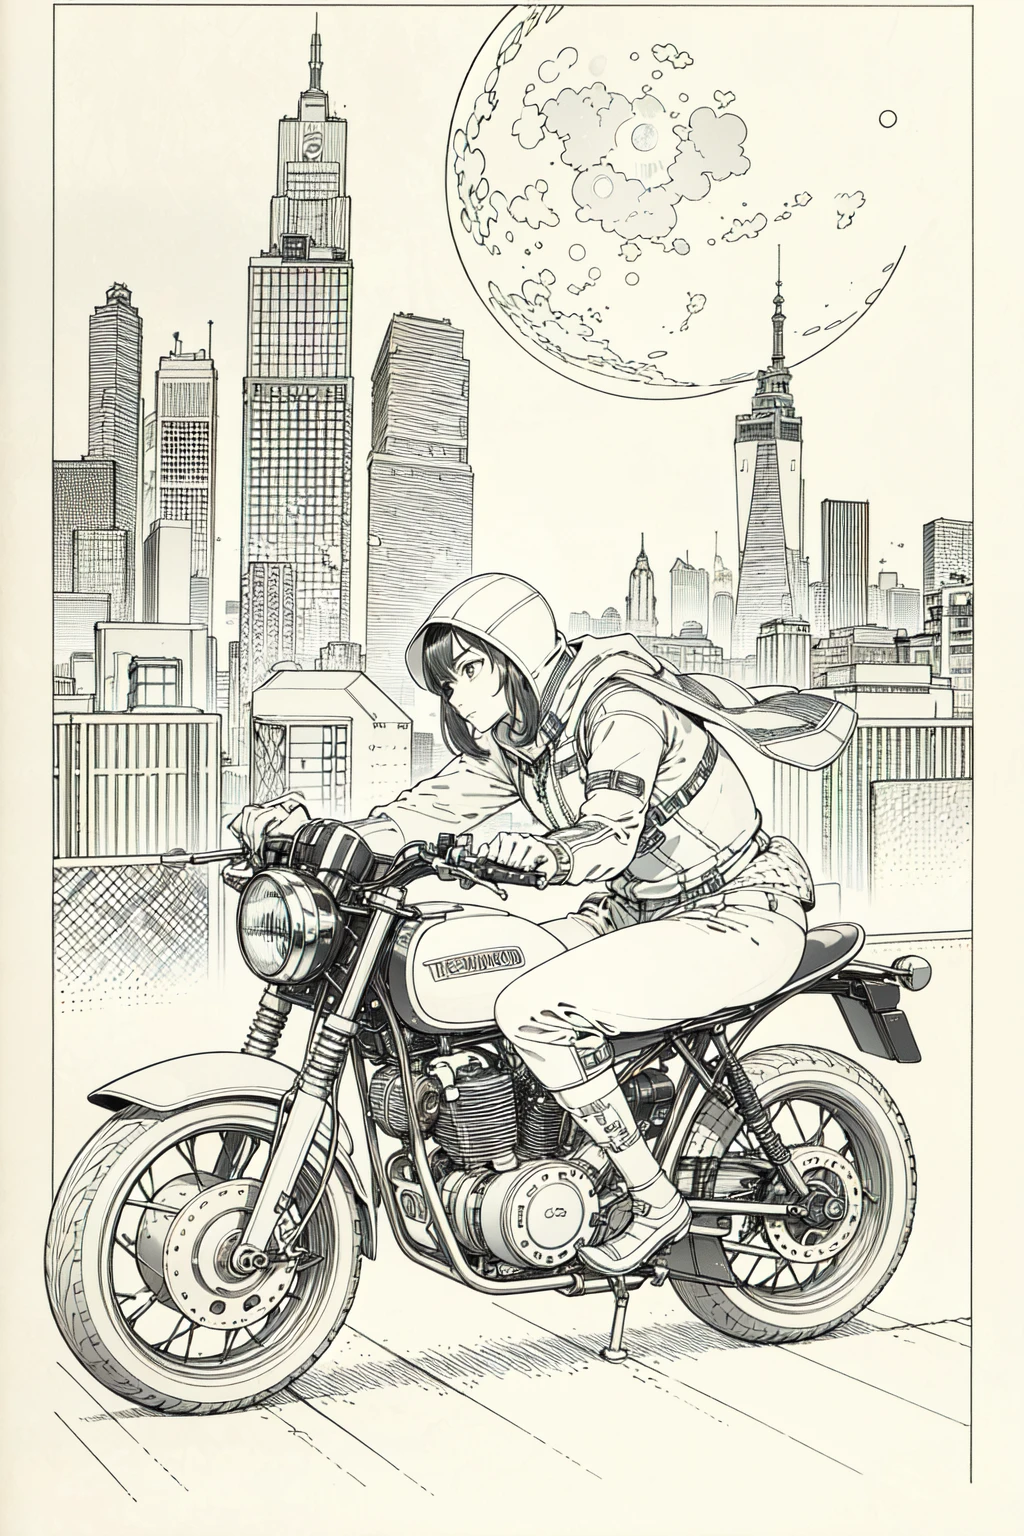 beste Qualität, Meisterwerk, Foto, 4K, Fotorealistic, sehr detailliert,
1 Mädchen fährt Motorrad, Tech-Kleidung, cyberpunk city, Allein, futuristisch, riesiger Mond im Hintergrund, Schwarz und weiß, von Akira Toriyama, closeup,
